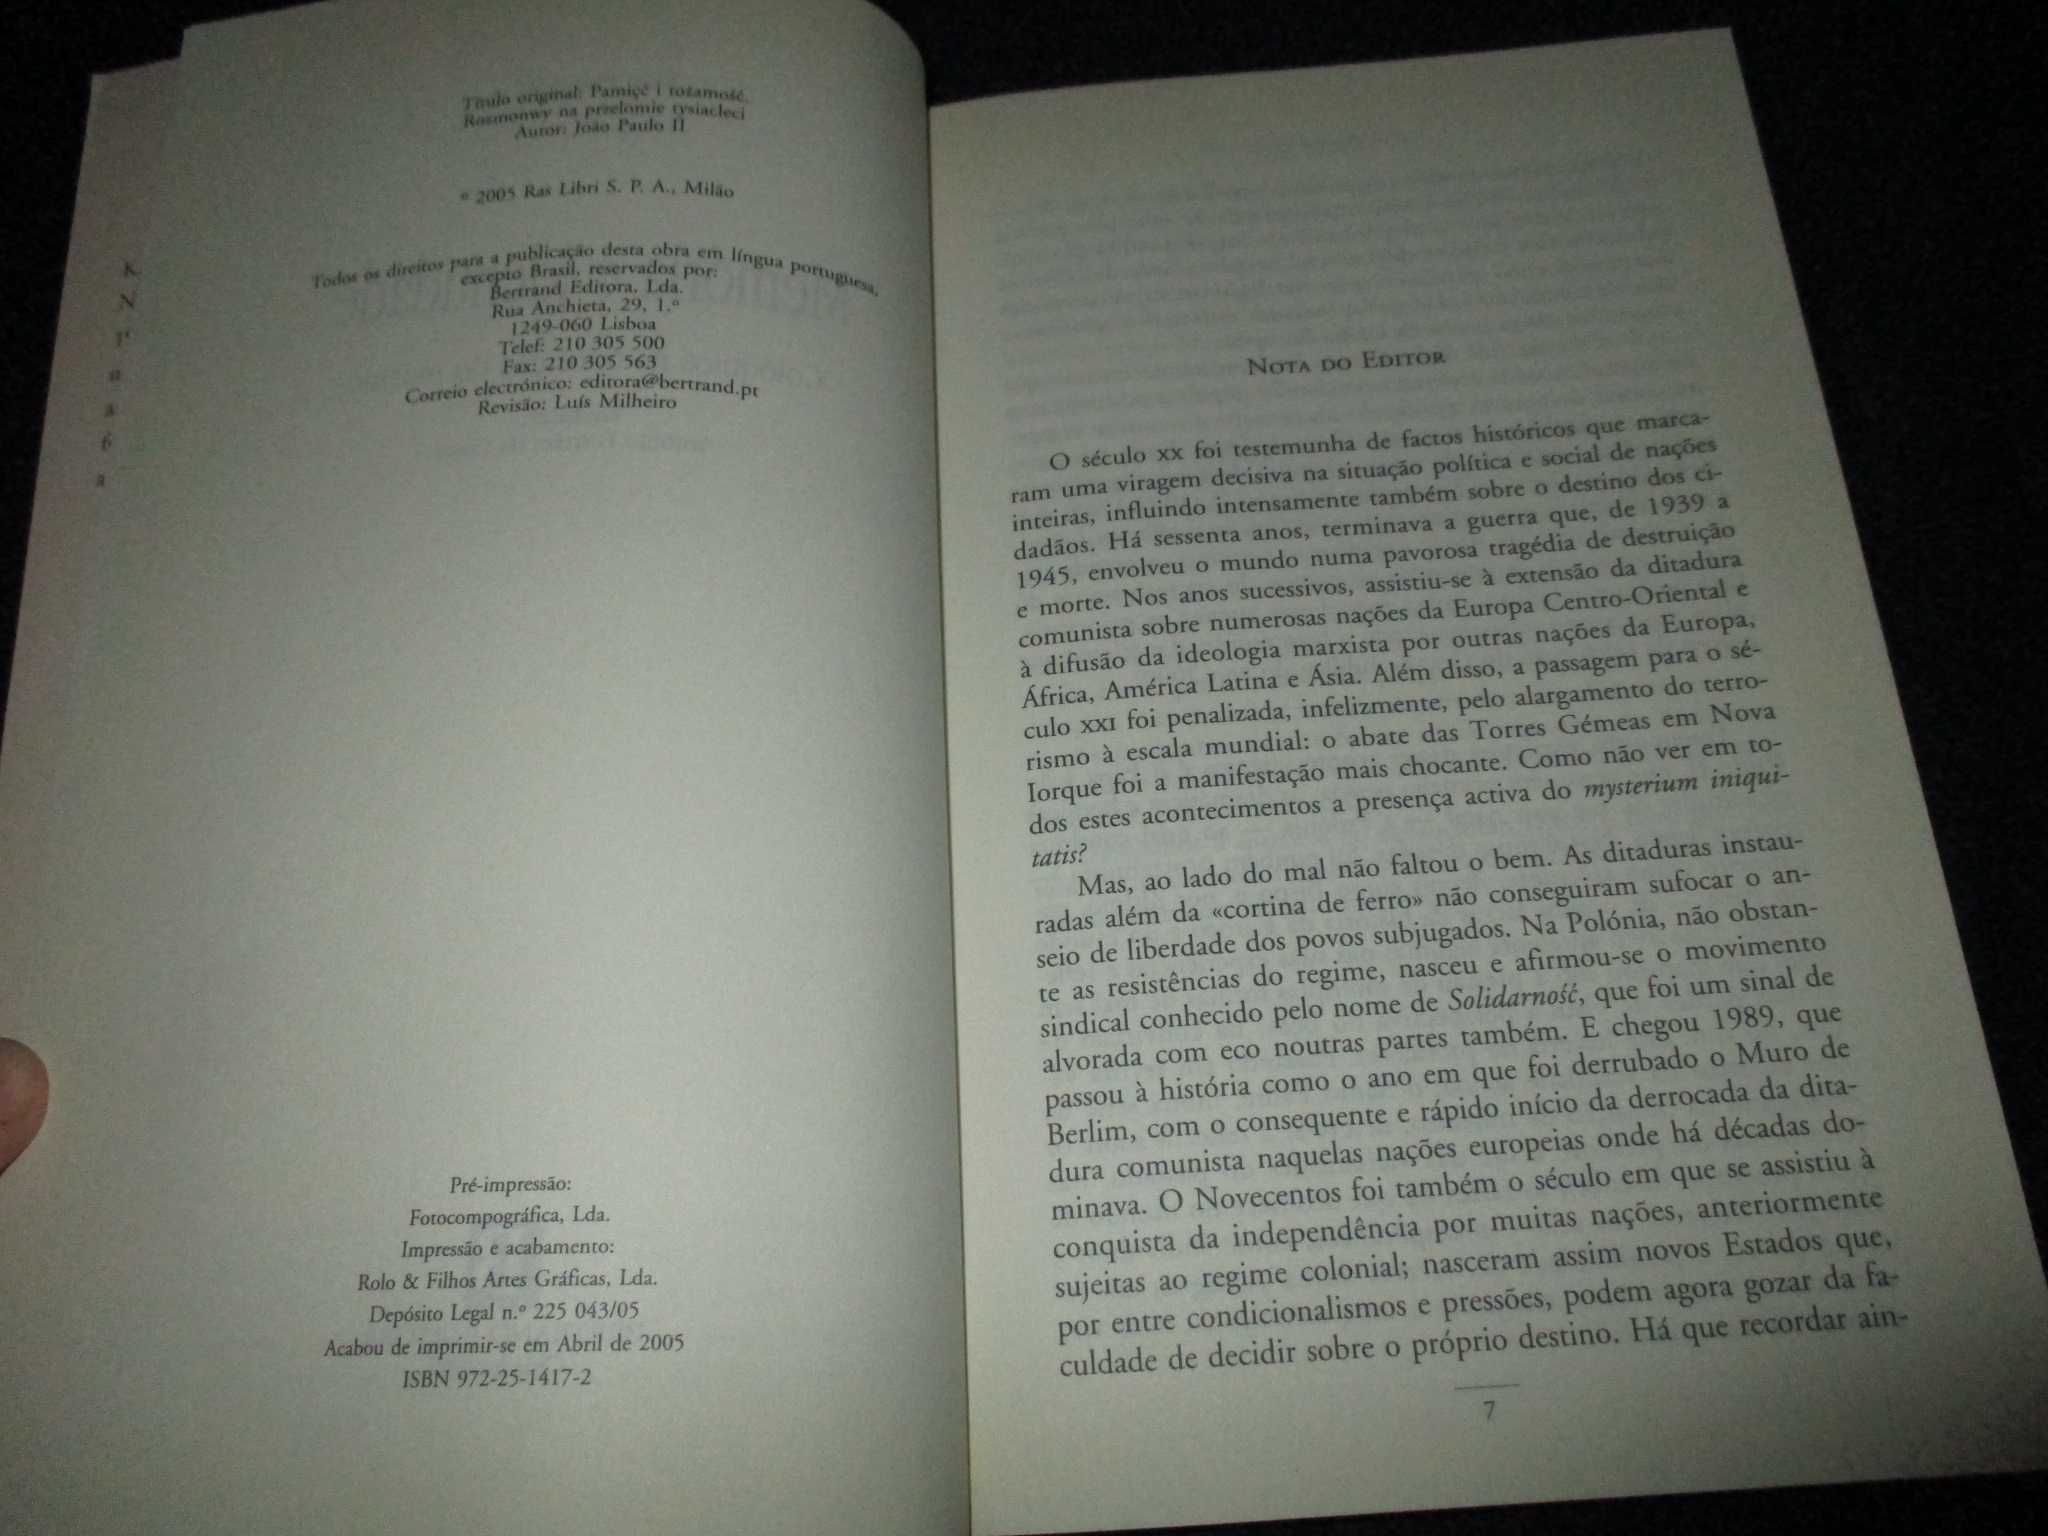 Livro Memória e Identidade João Paulo II Bertrand